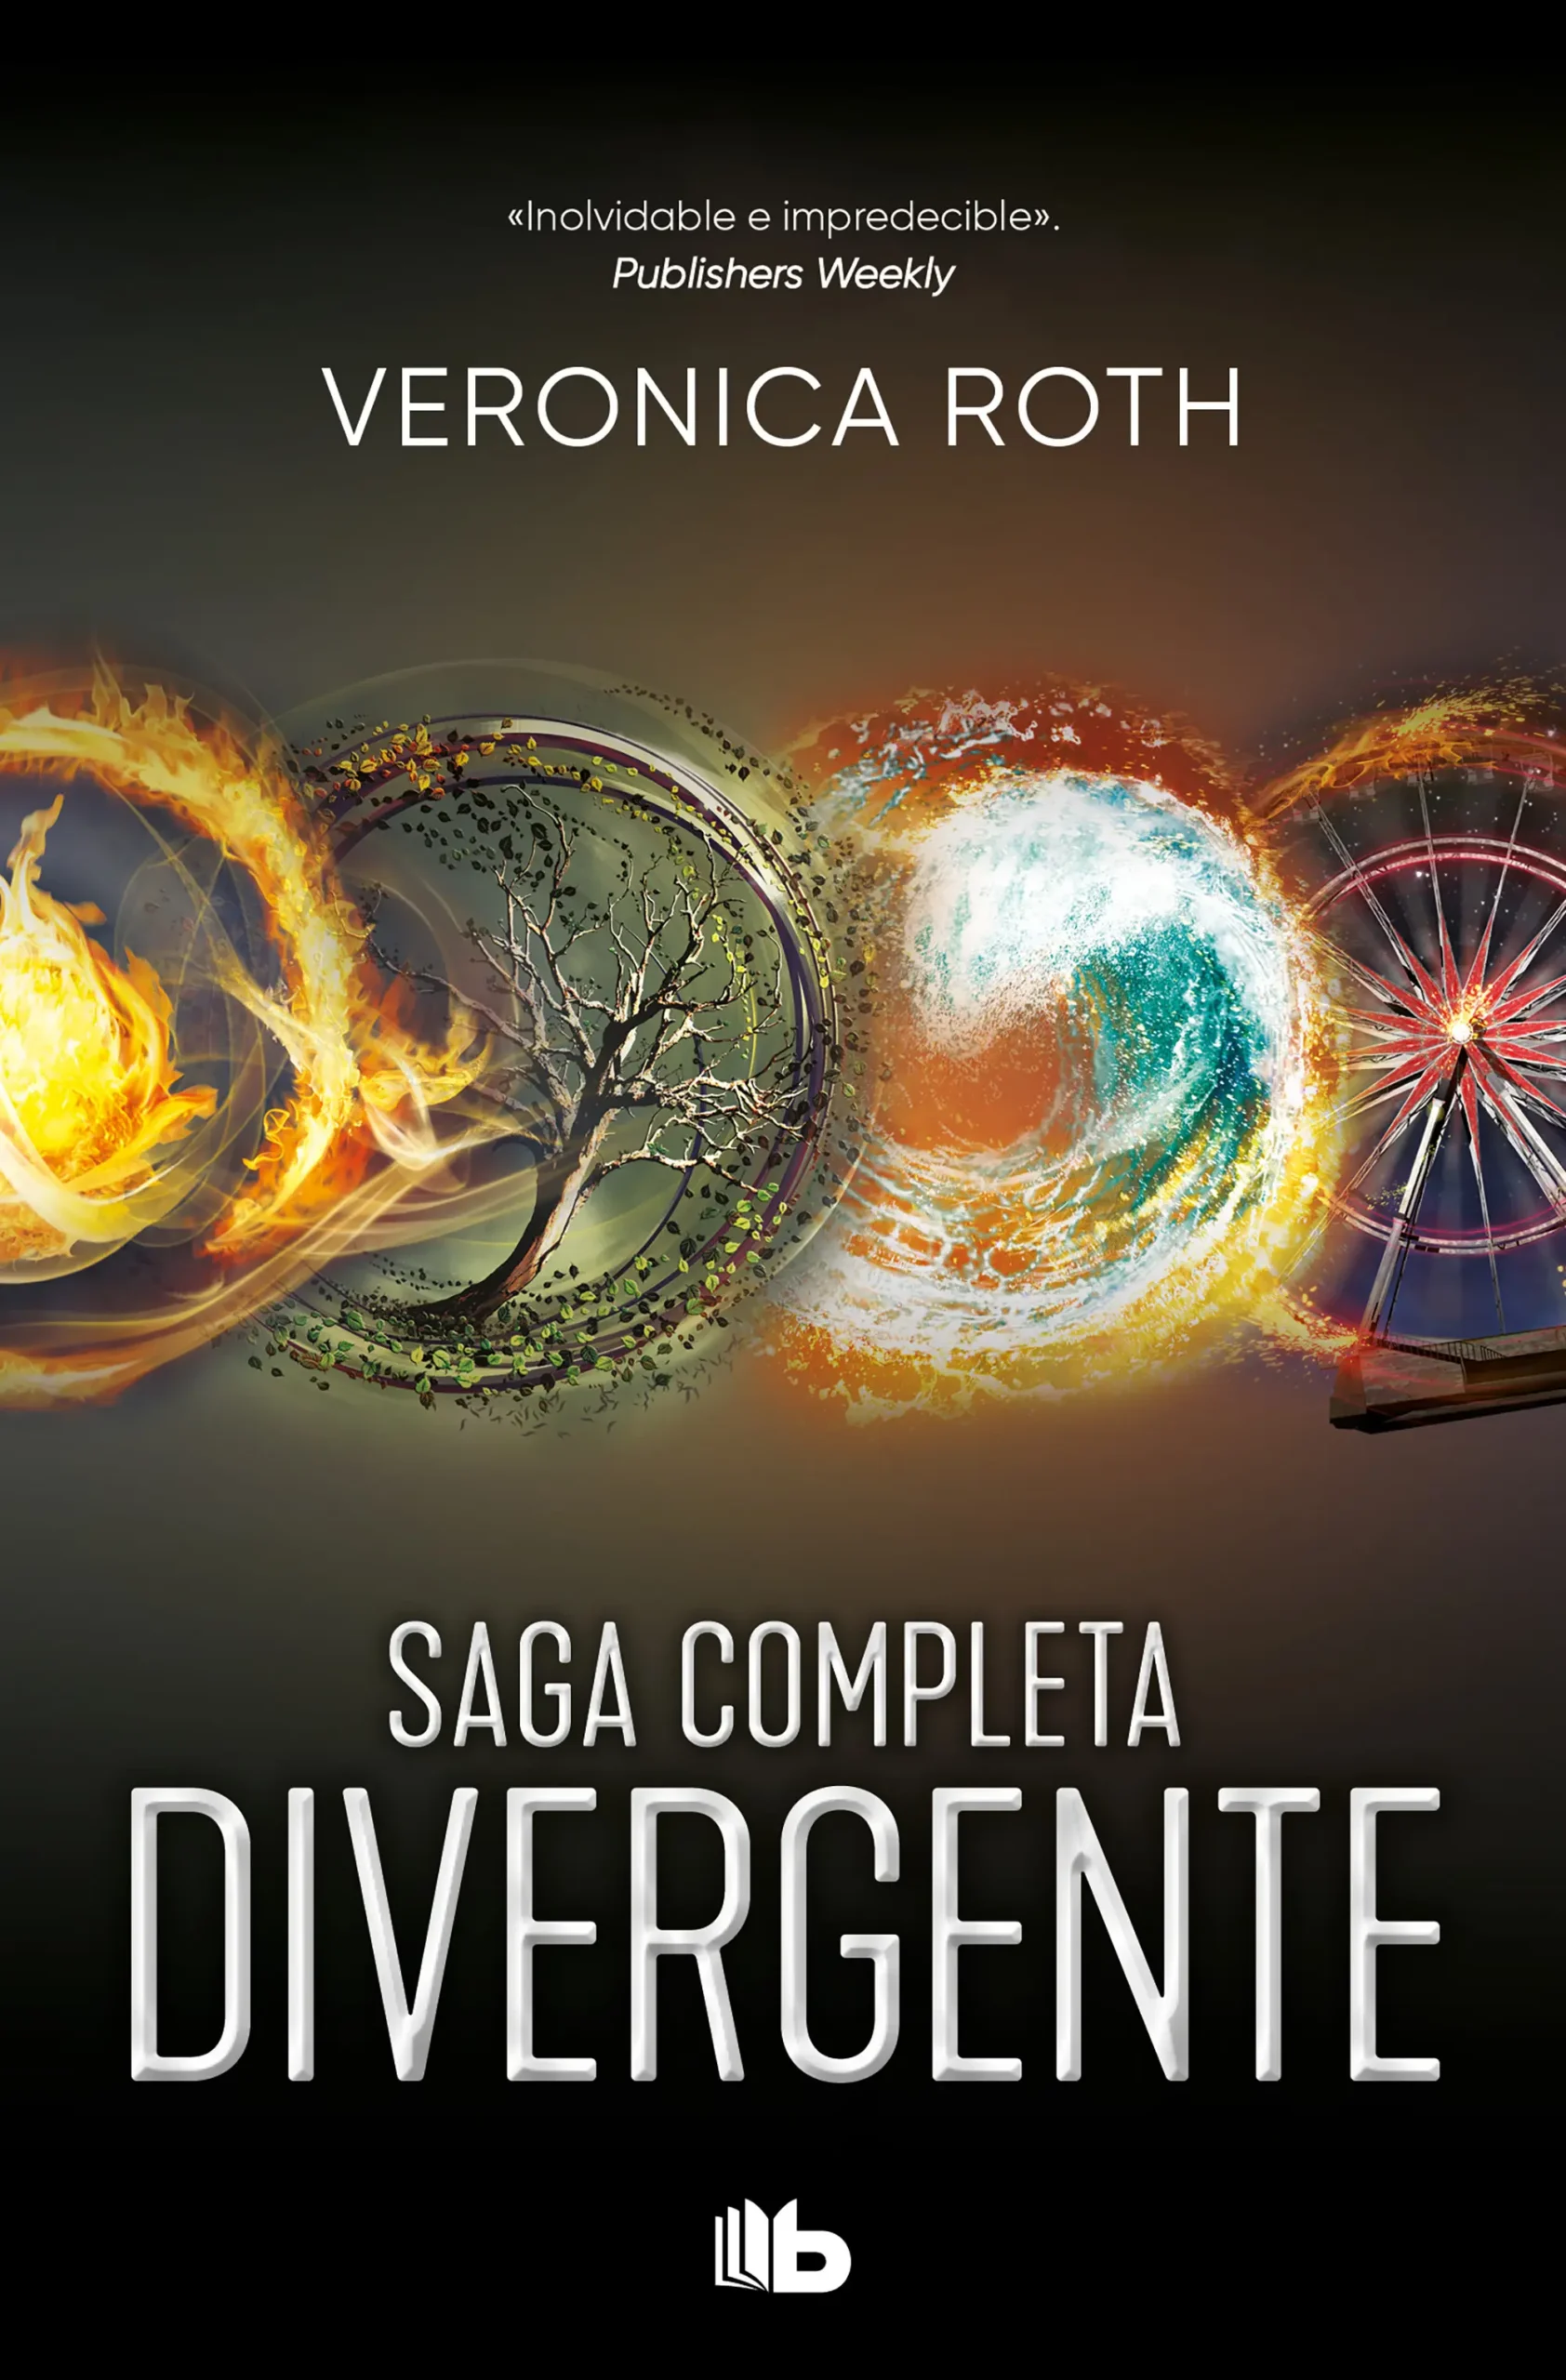 cuatro divergente libro resumen - Cómo se llama Divergente 4